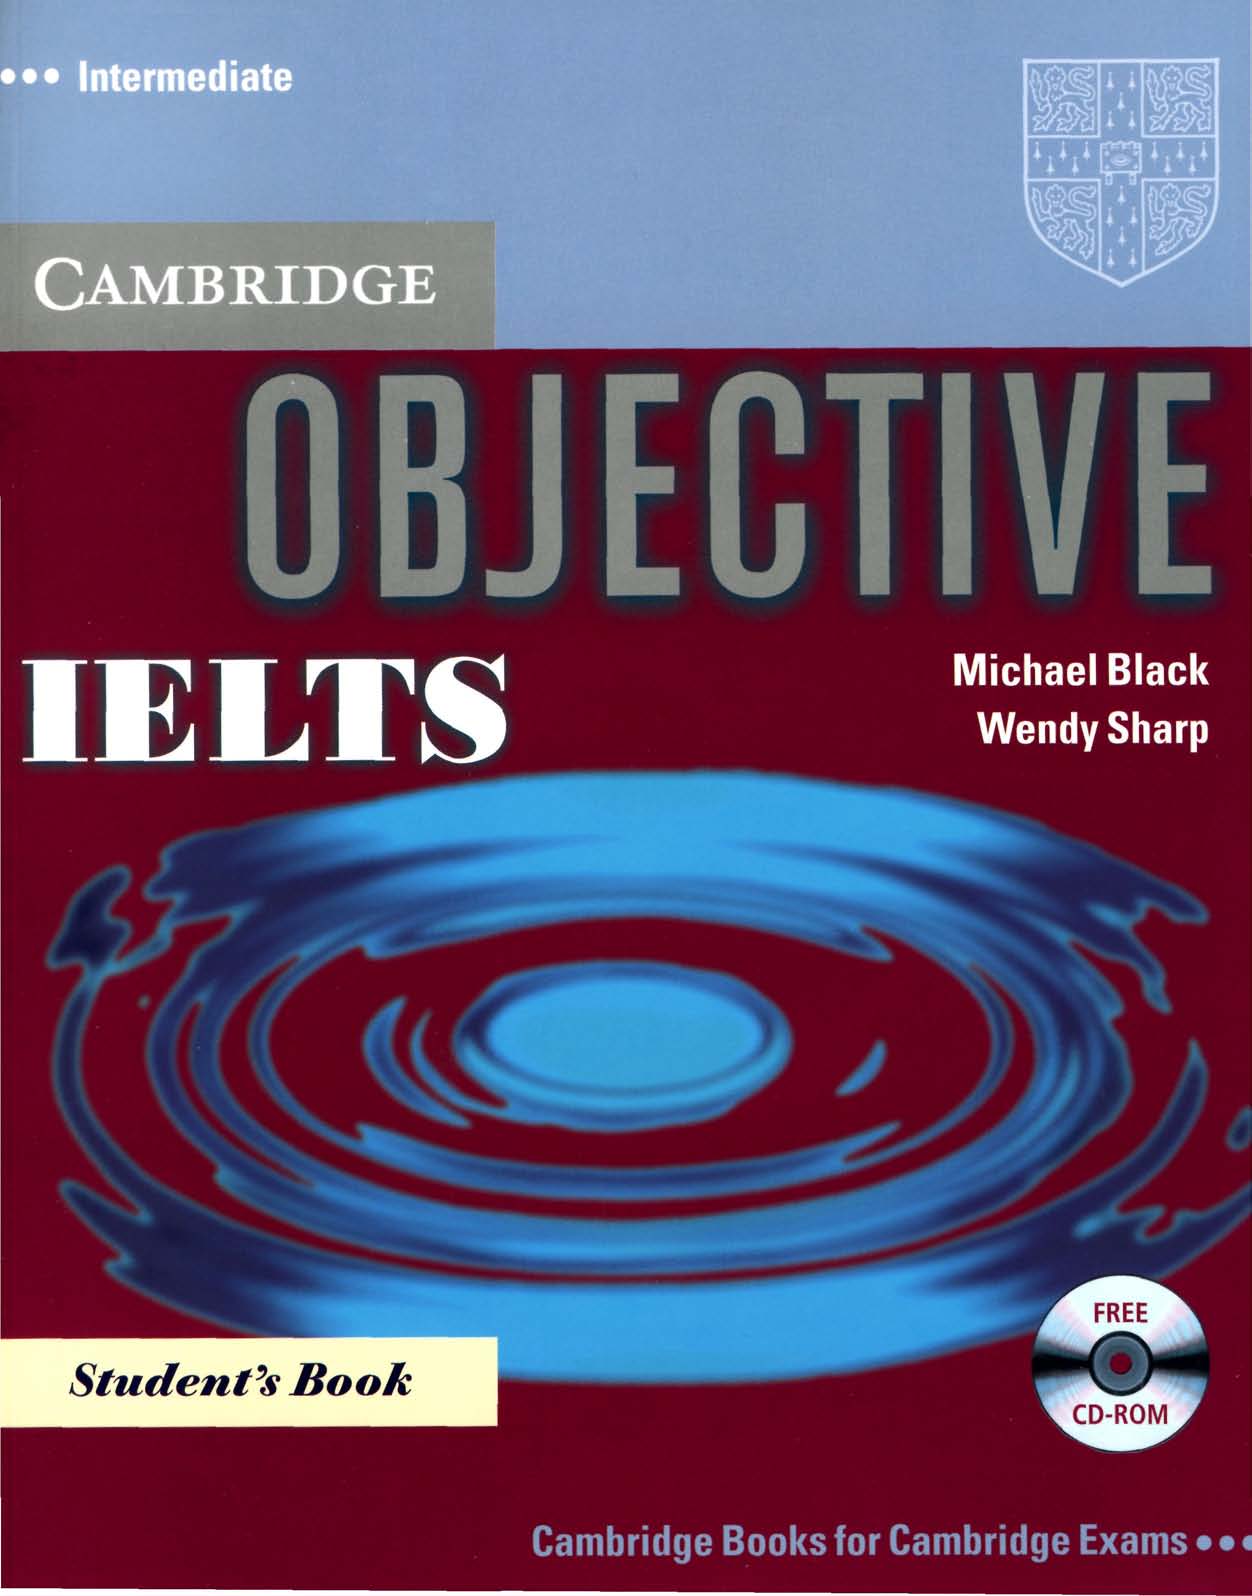 Objective IELTS Intermediate